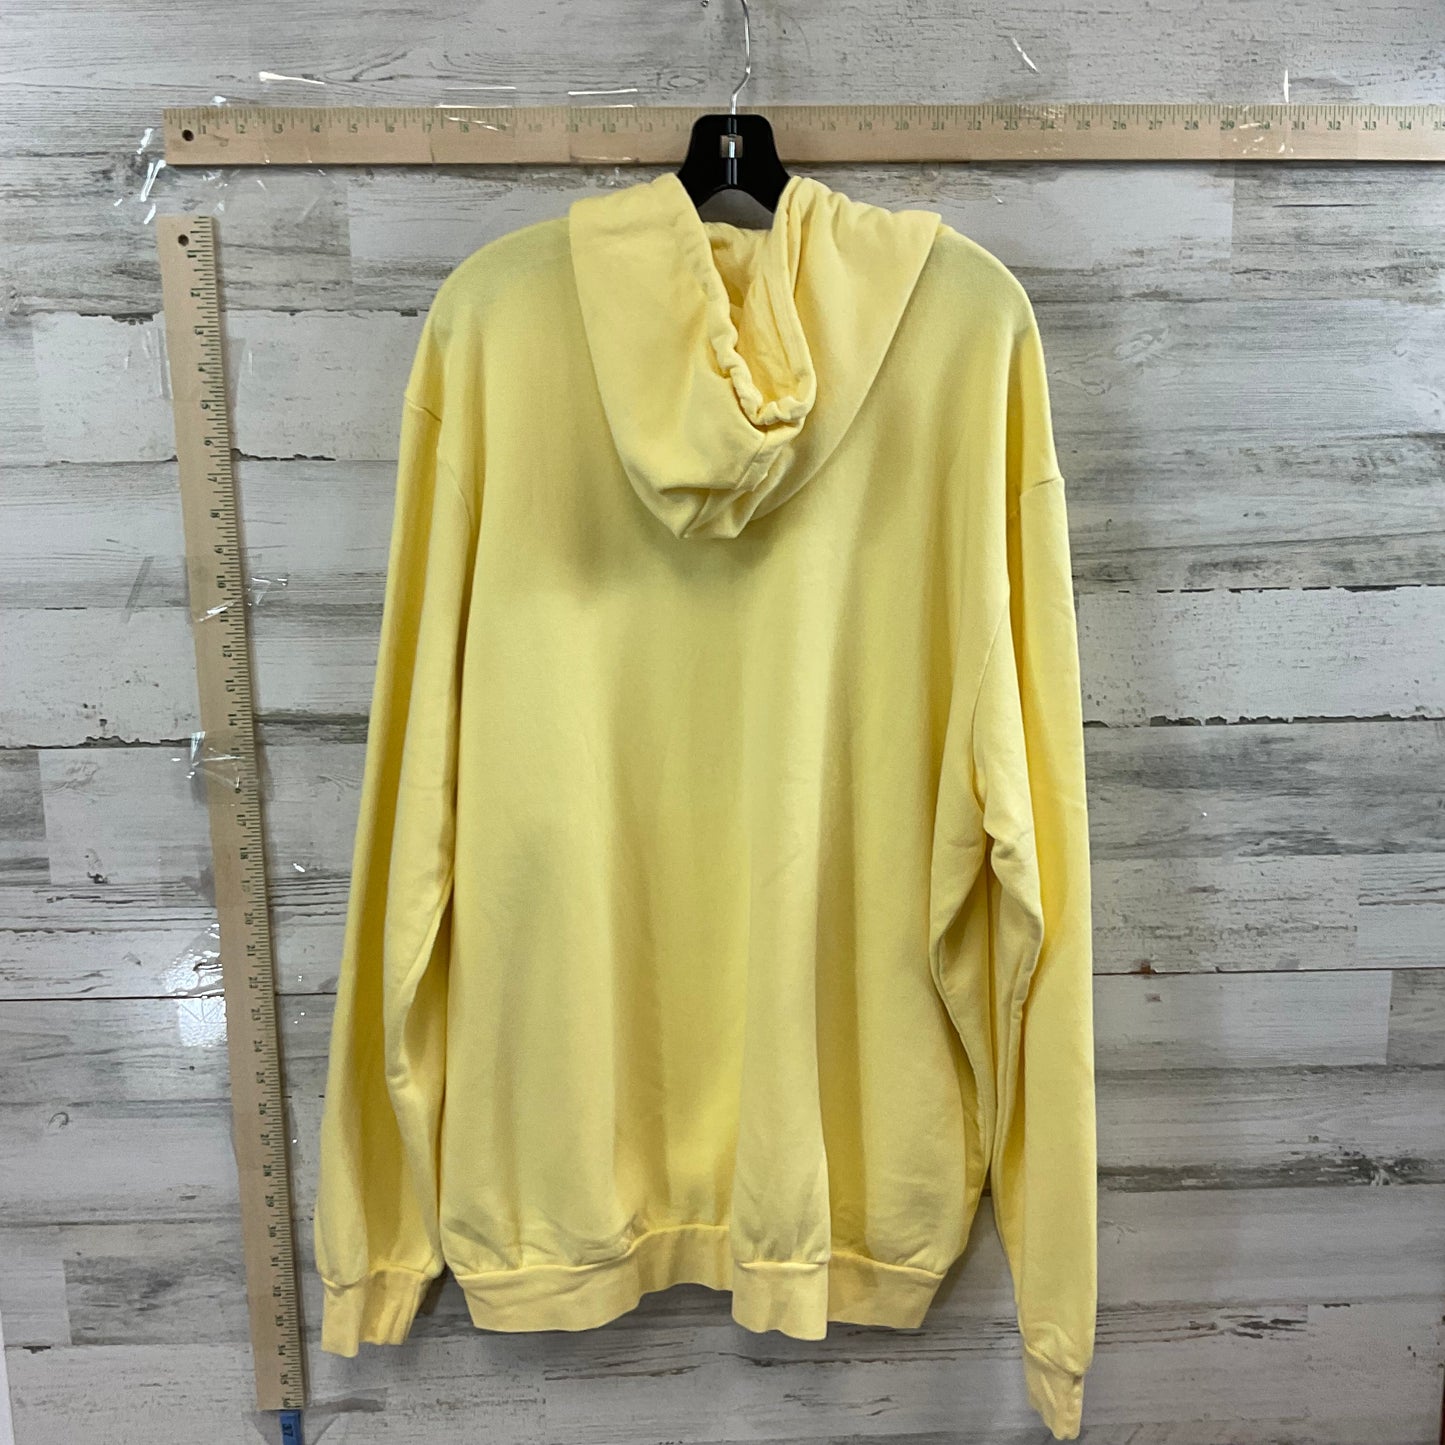 Yellow Sweatshirt Hoodie Adidas, Size 2x